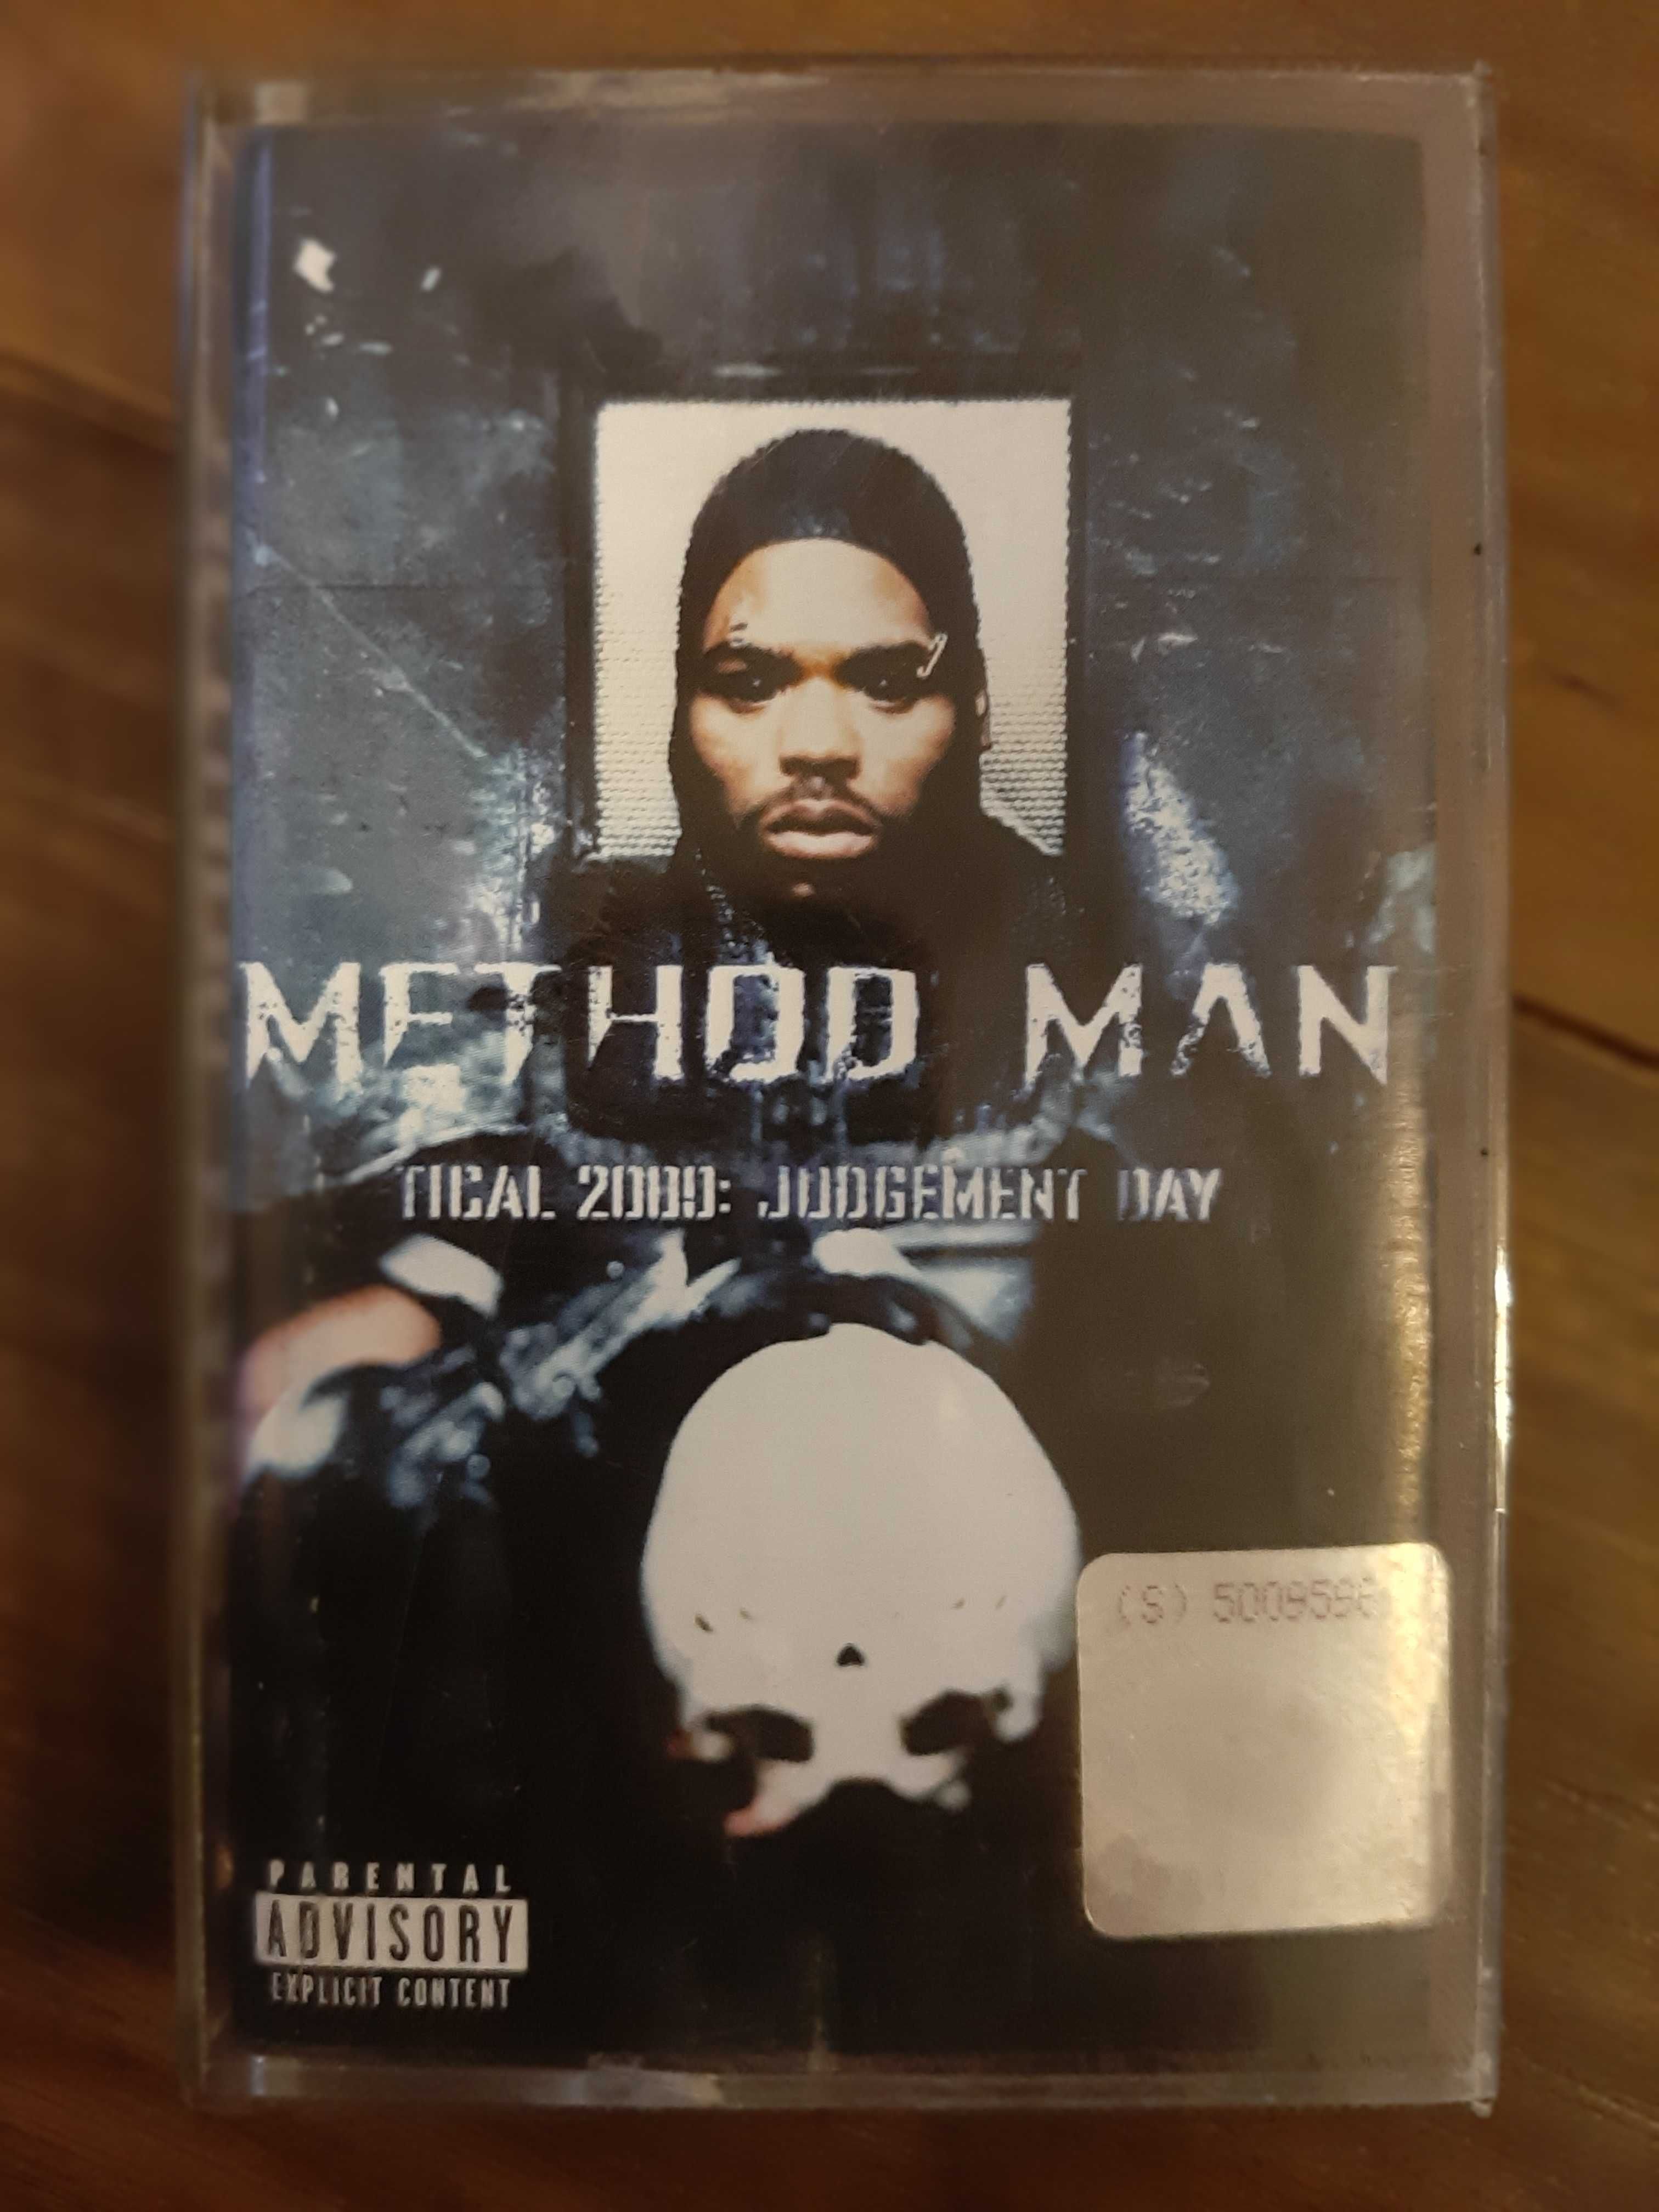 Method Man - Tical 2000: Judgement Day kaseta magnetofonowa